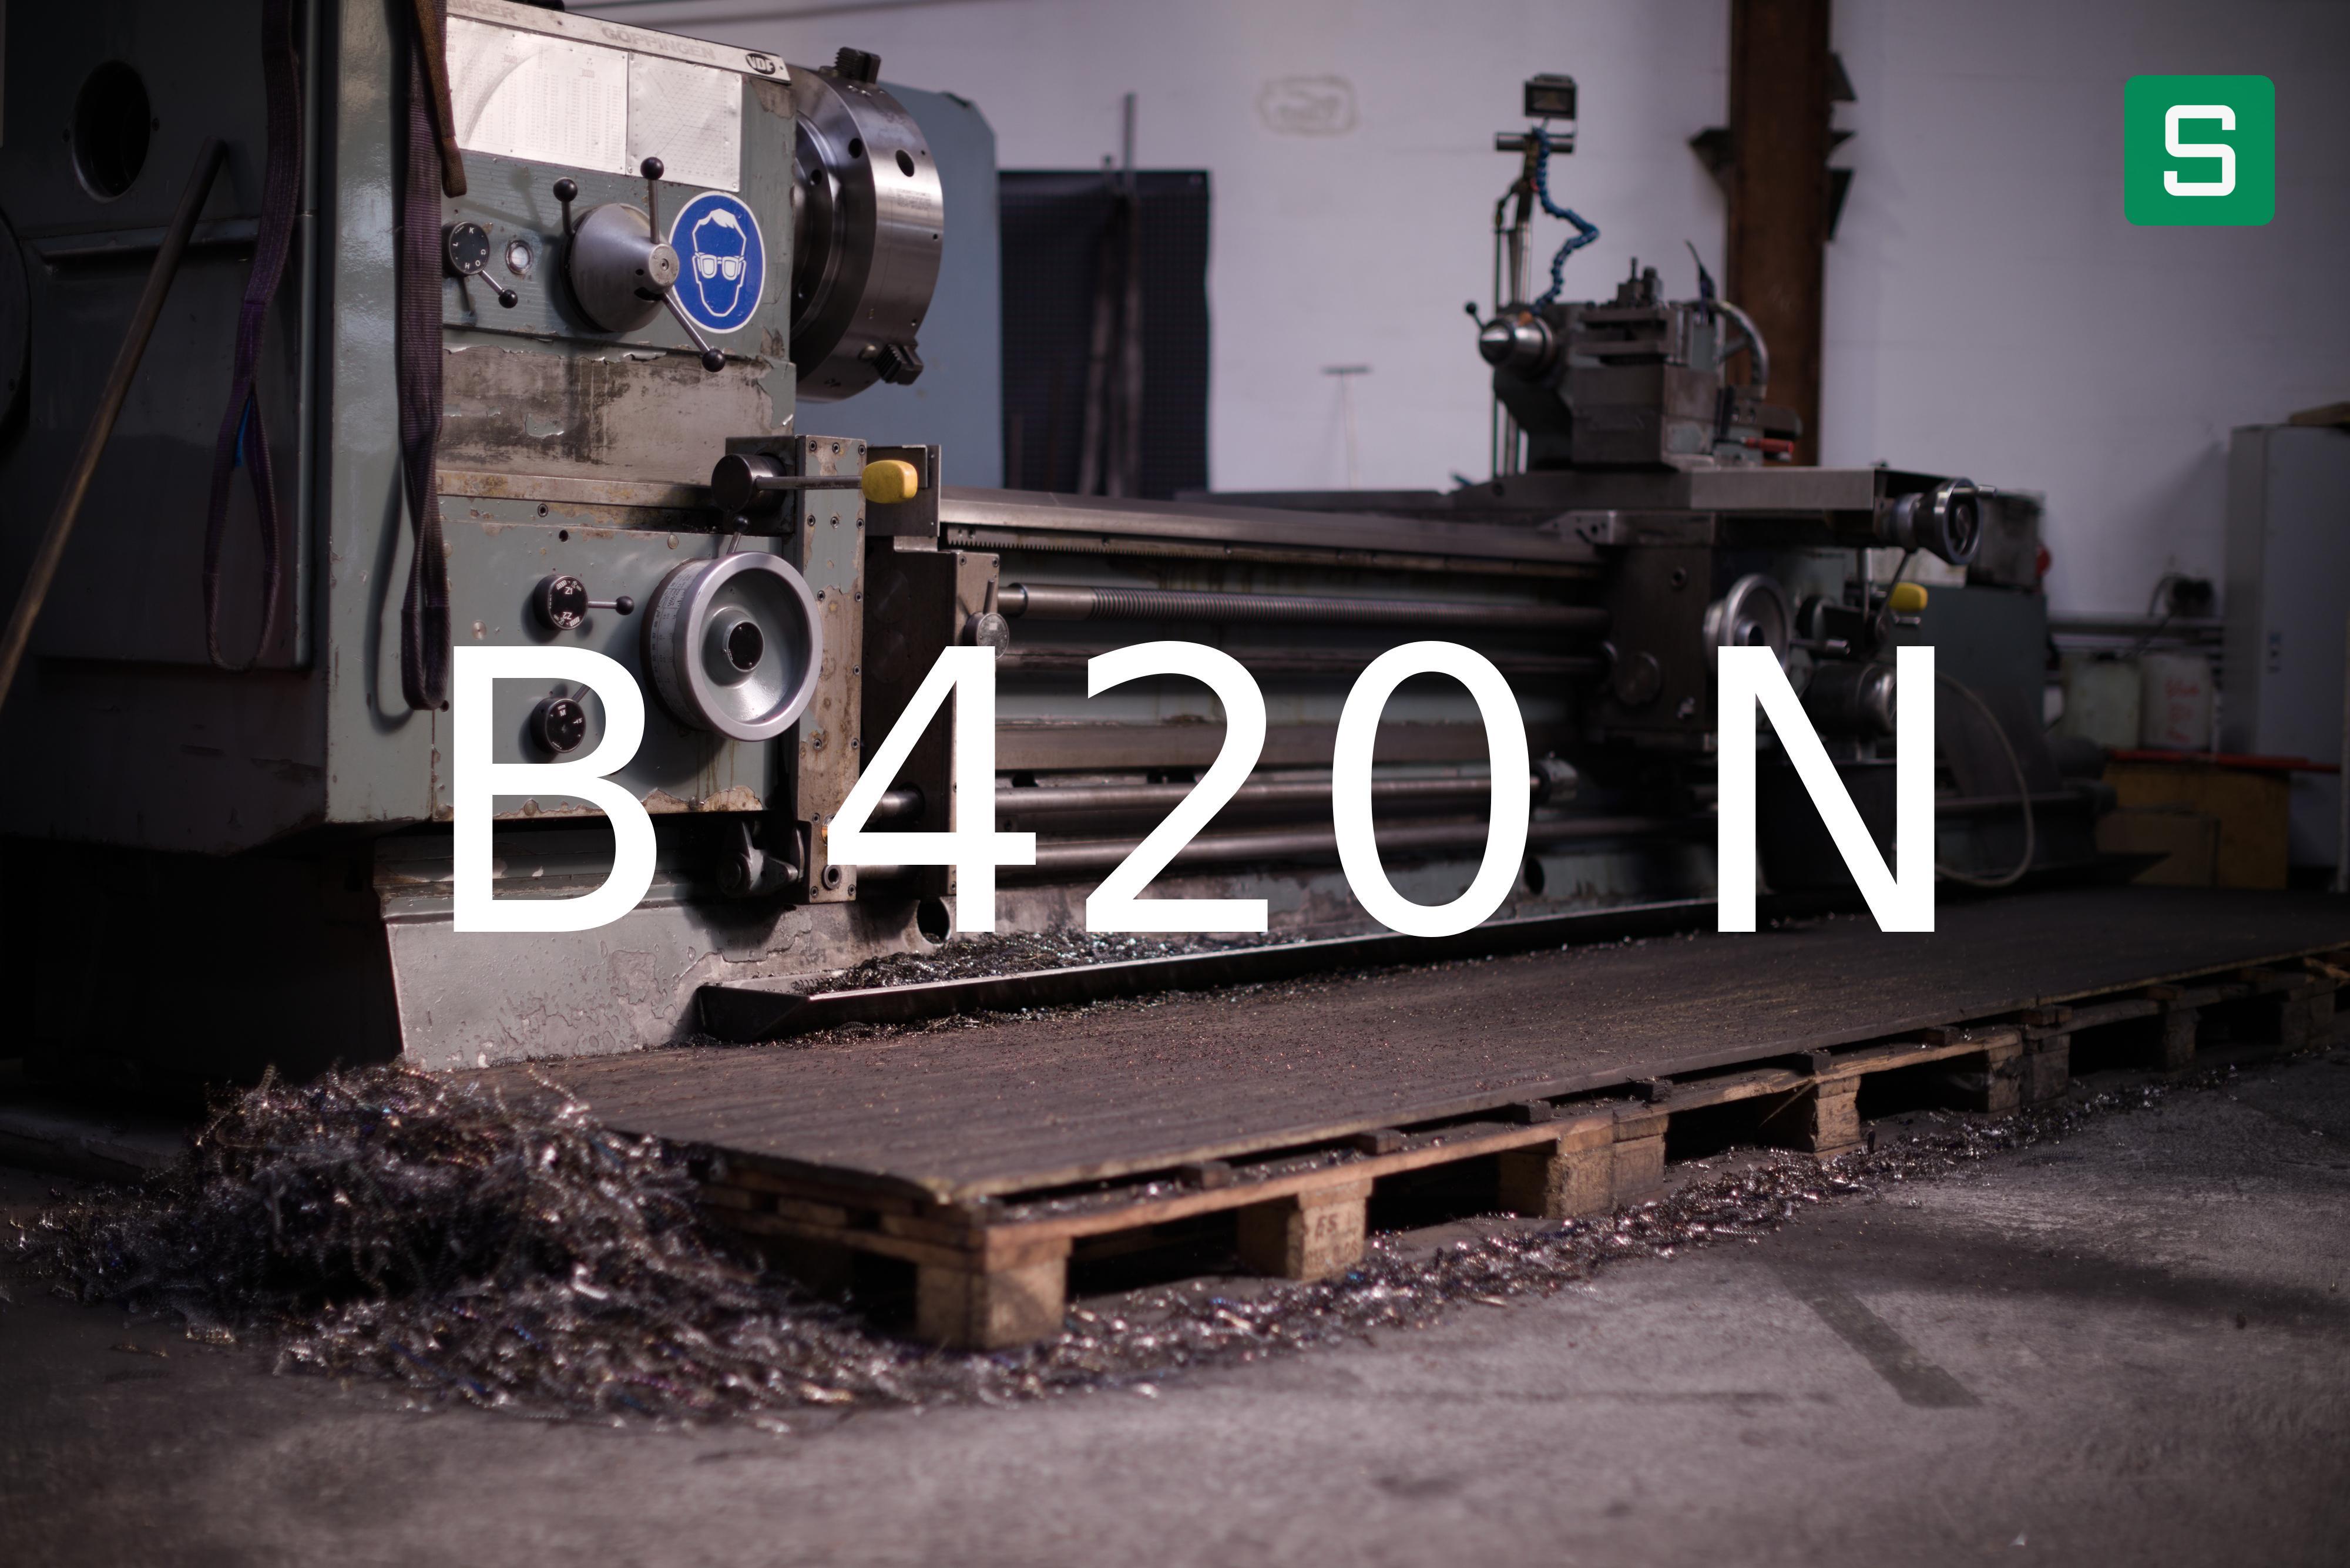 Steel Material: B 420 N